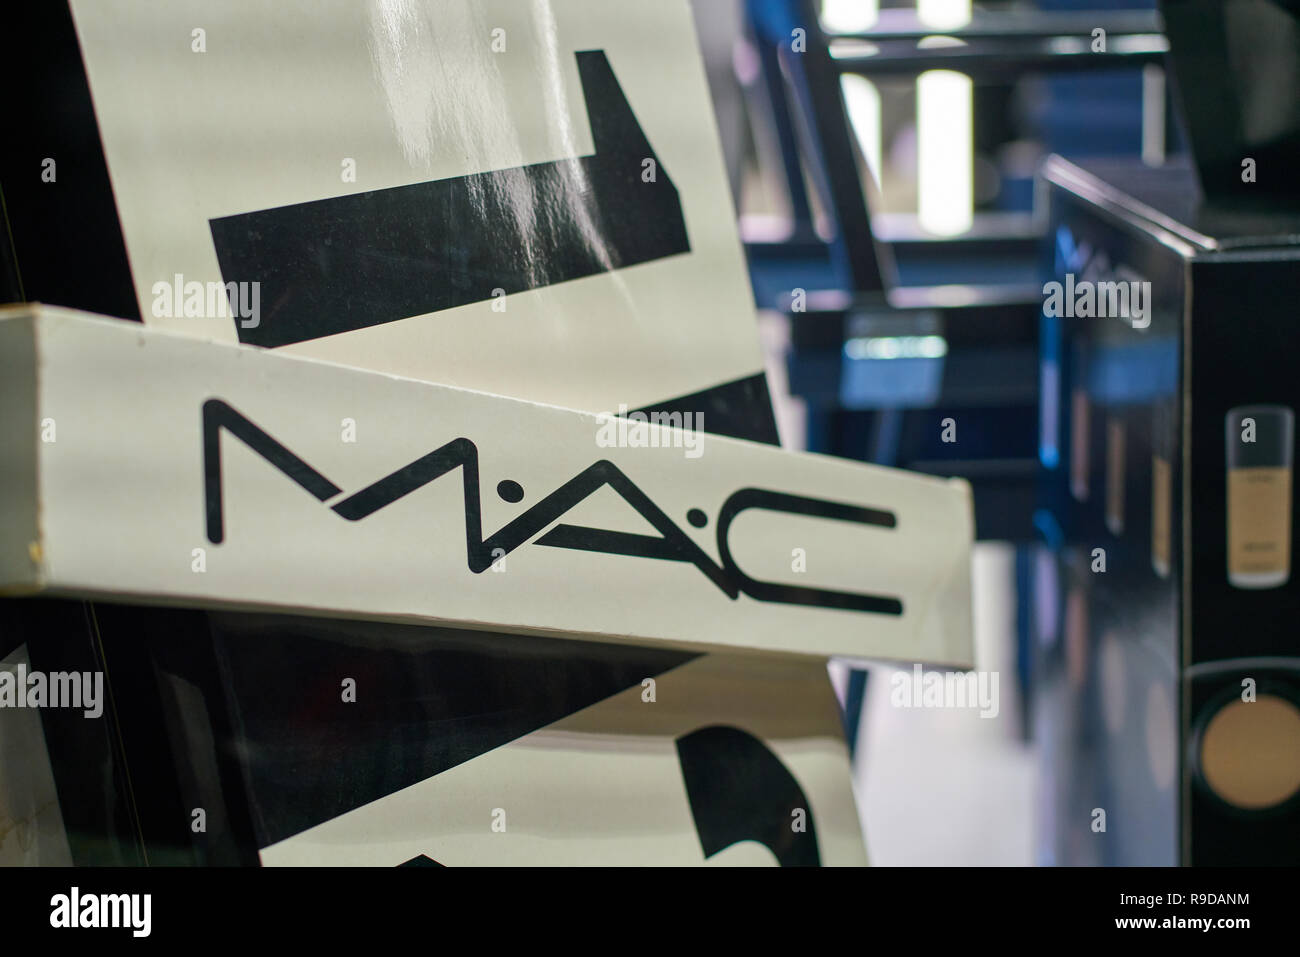 MILAN, ITALY - CIRCA NOVEMBER, 2017: close up shot of MAC sign. MAC is an abbreviation for Make-up Art Cosmetics. Stock Photo